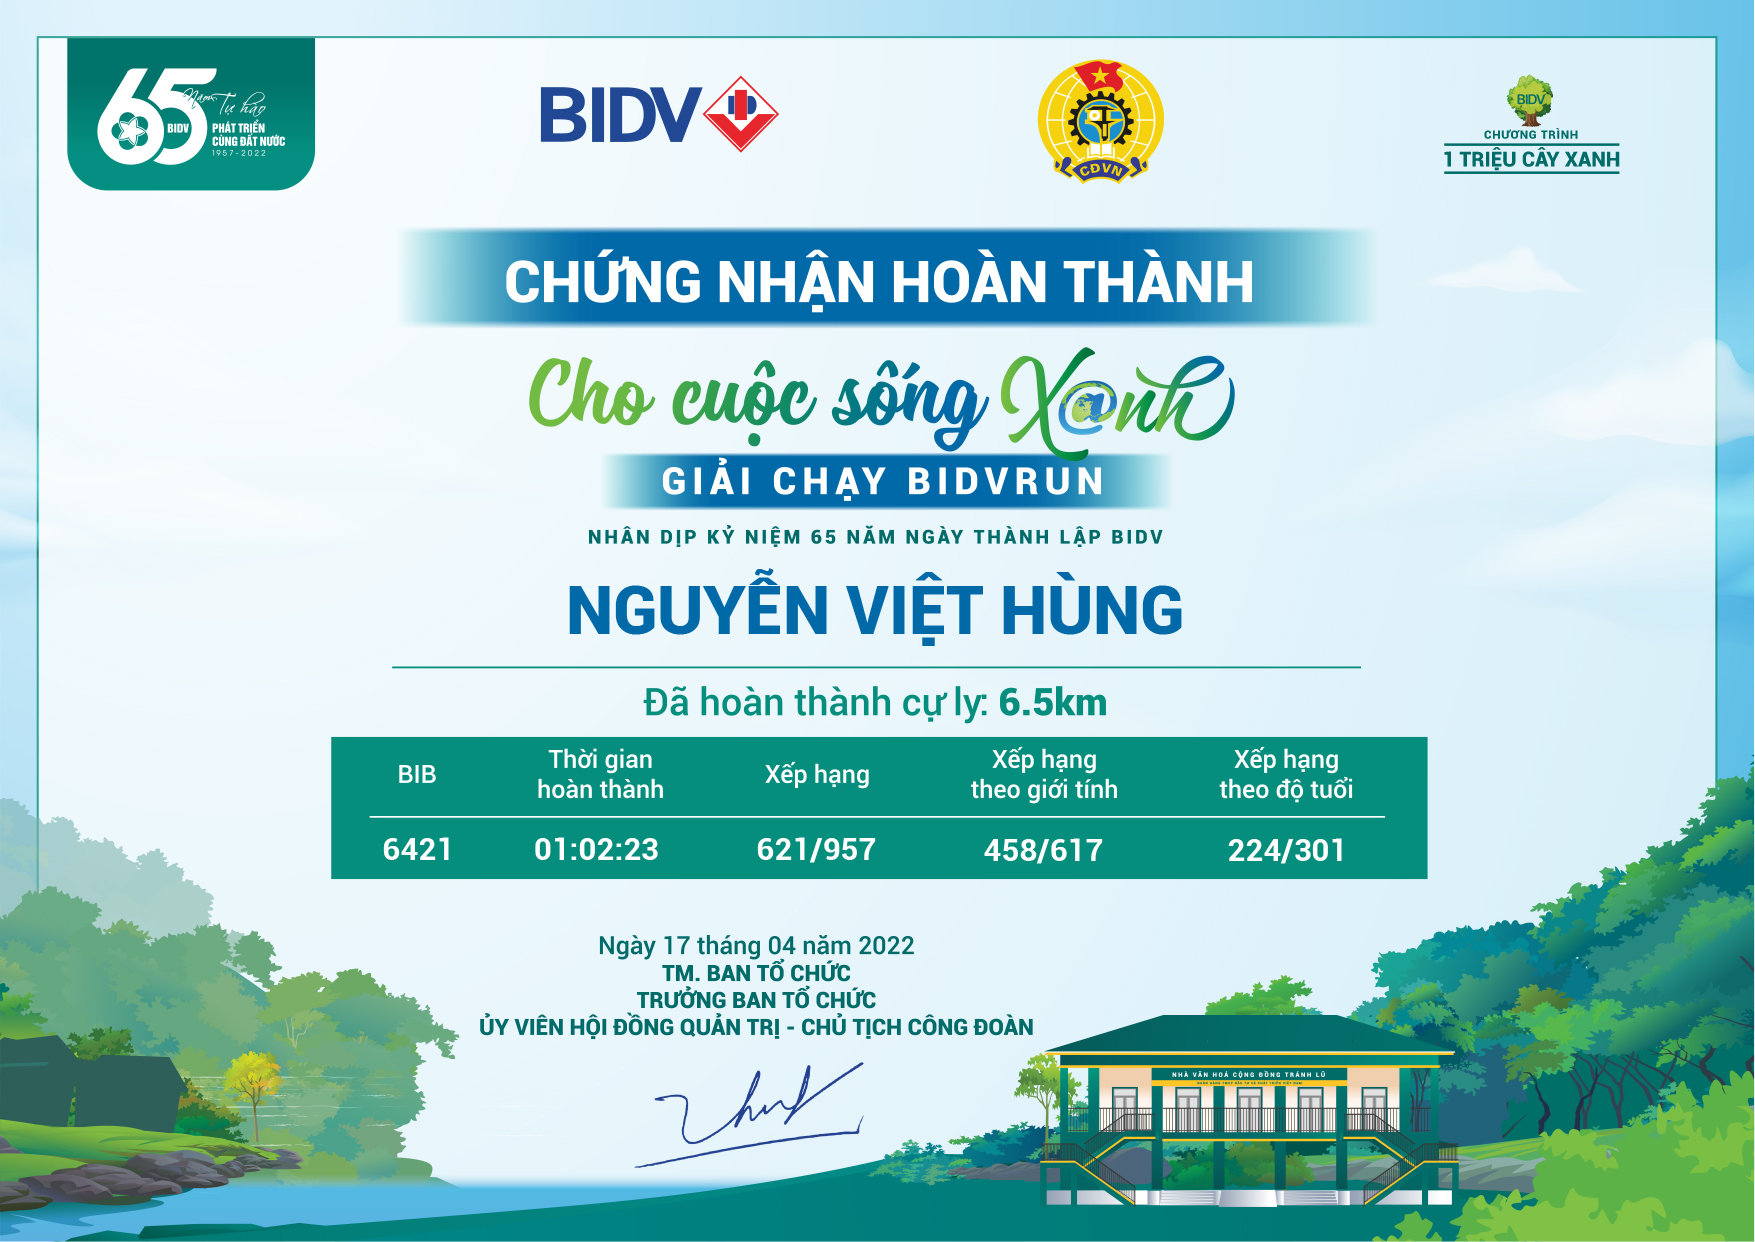 6421 - Nguyễn Việt Hùng